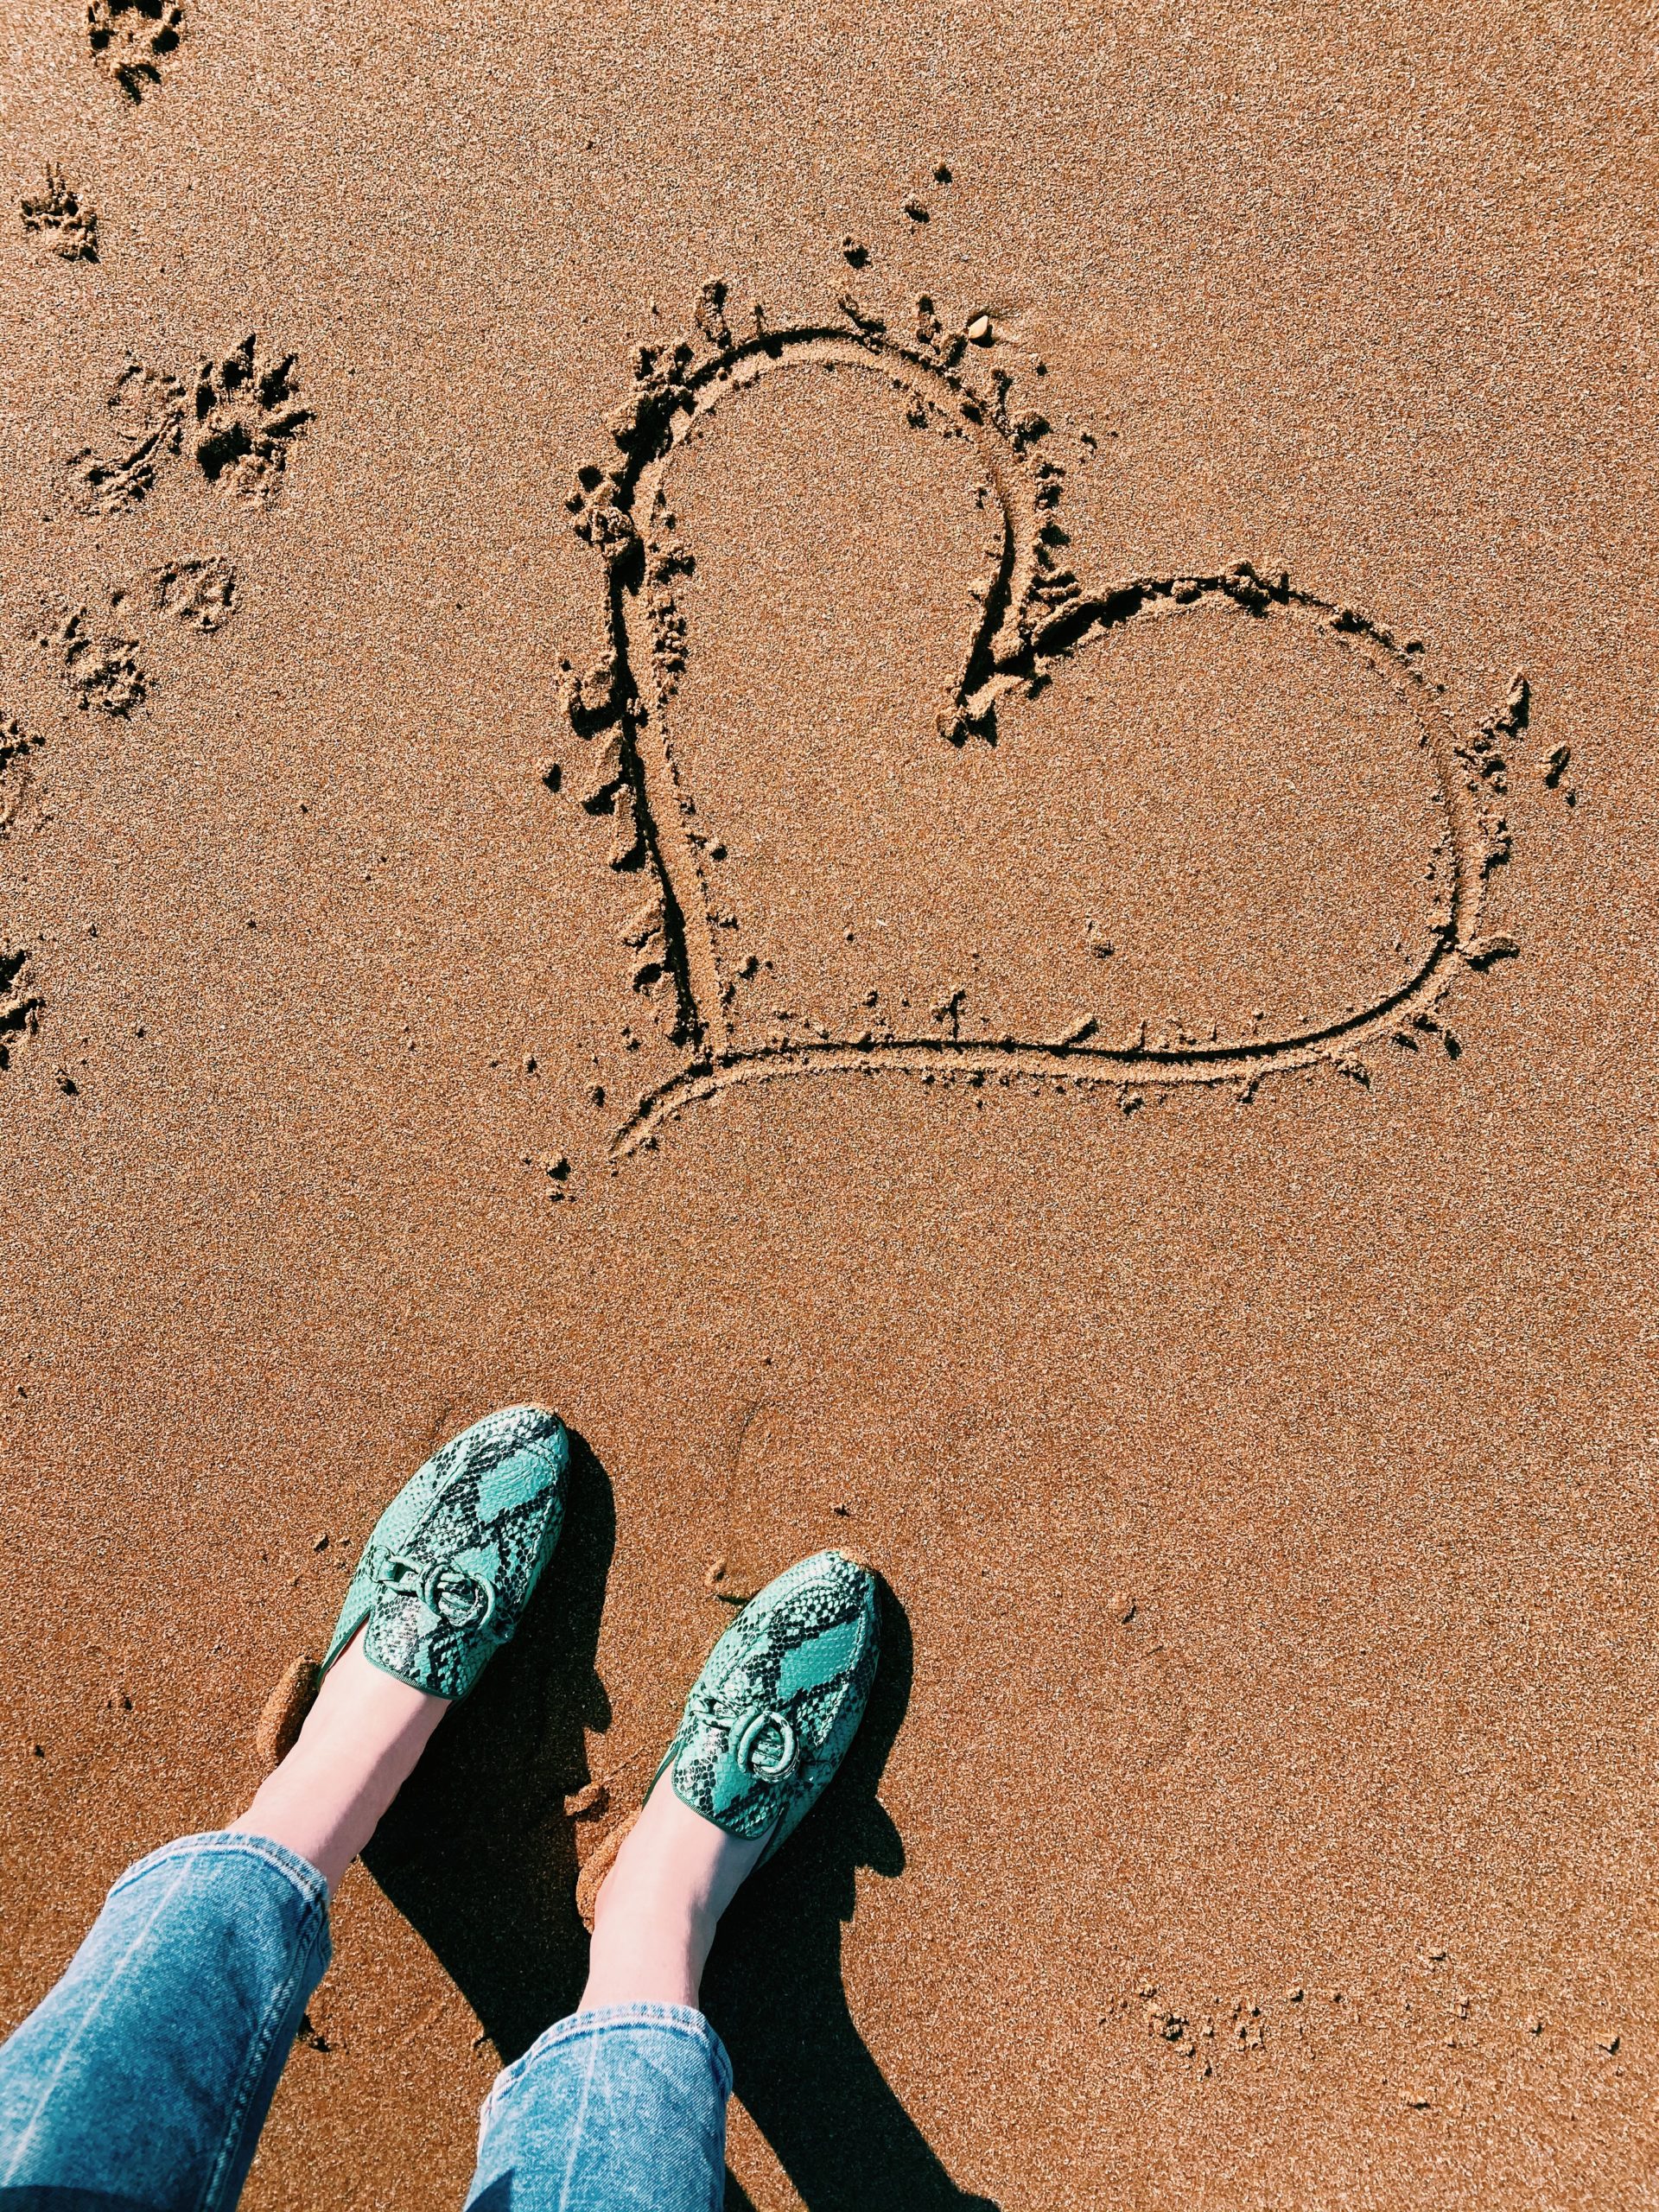 heart drawn into Margate beach sand